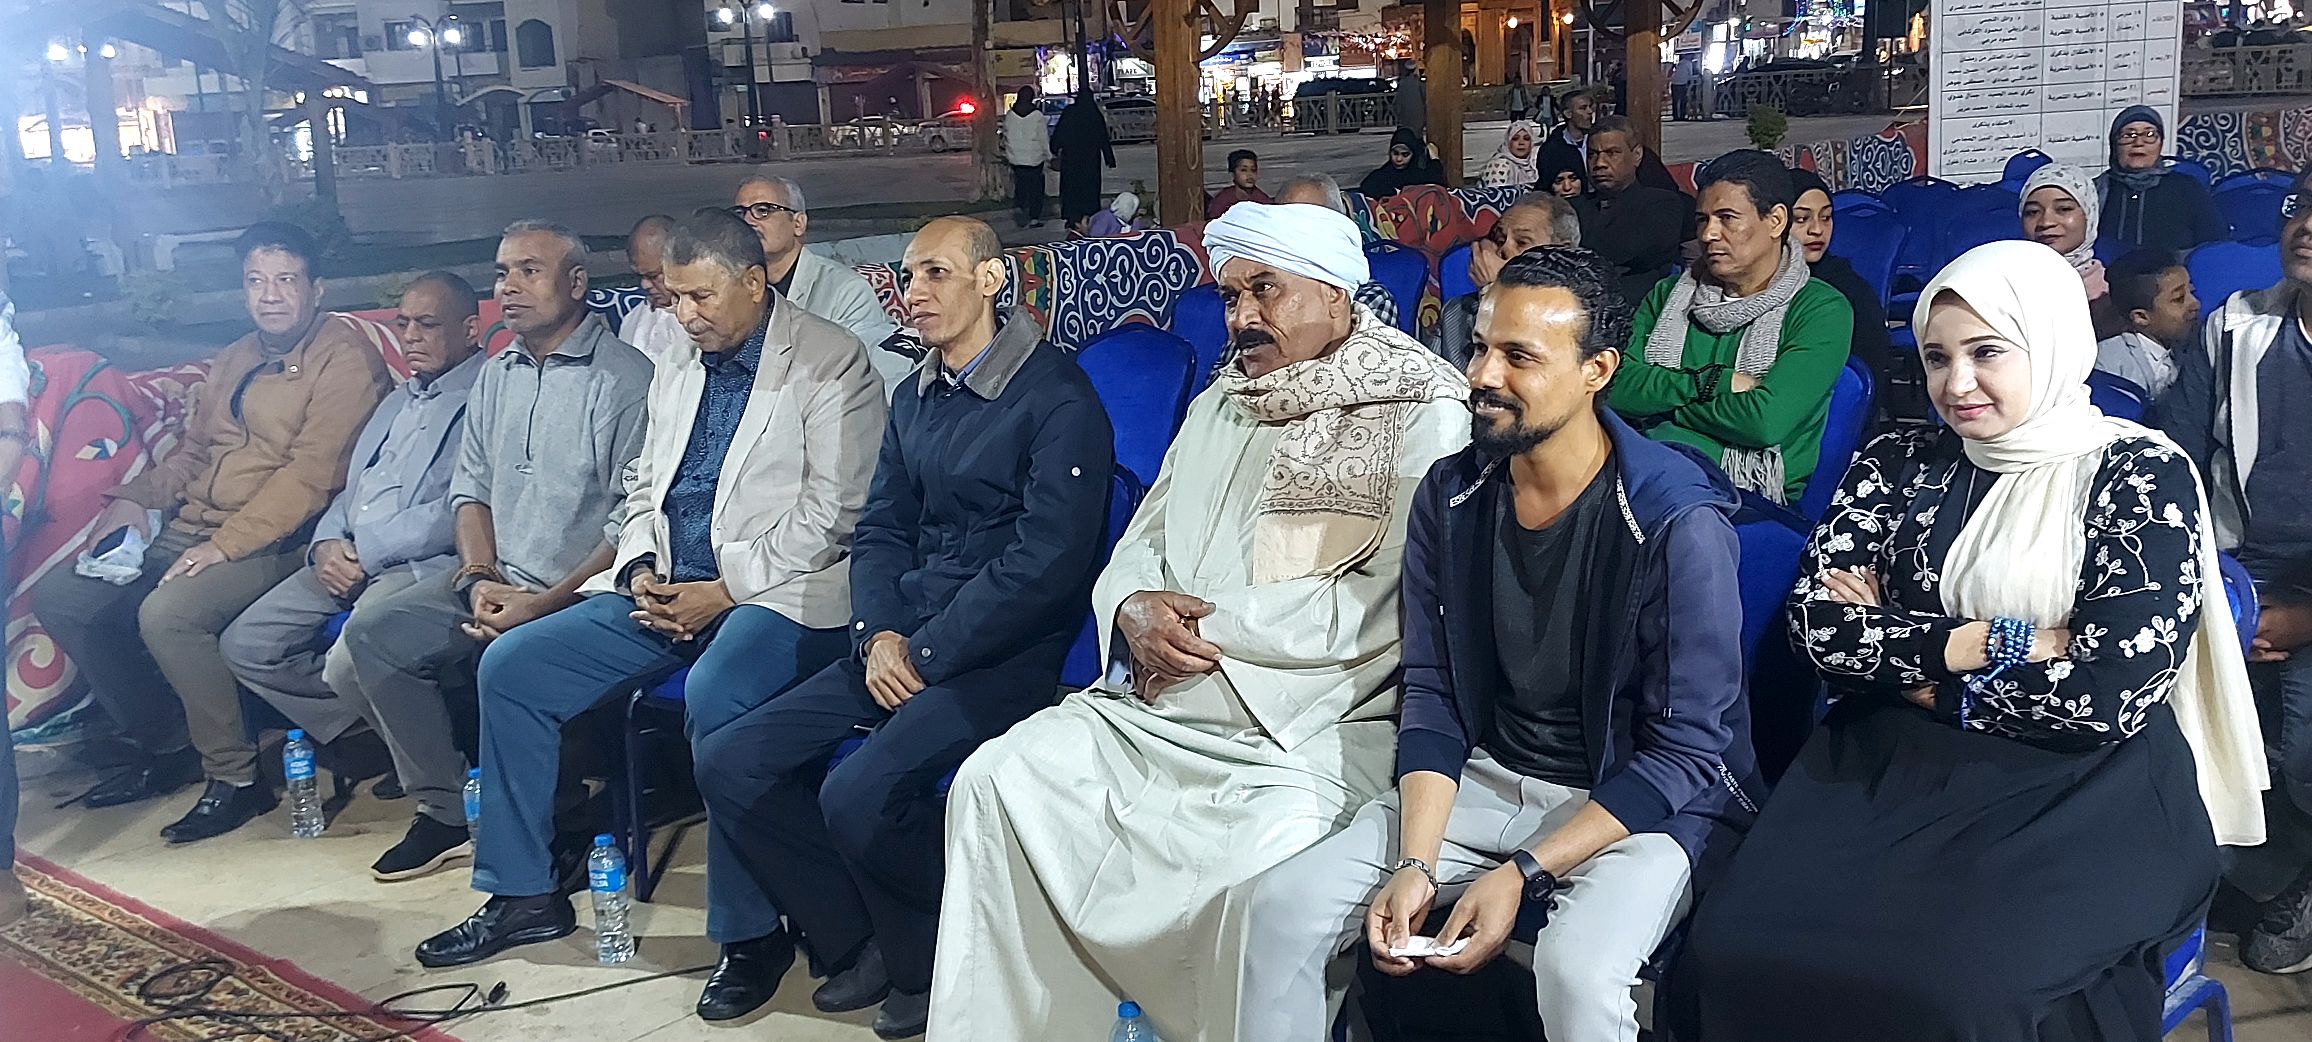 حضور ليالى رمضان الثقافية بساحة أبو الحجاج بالأقصر